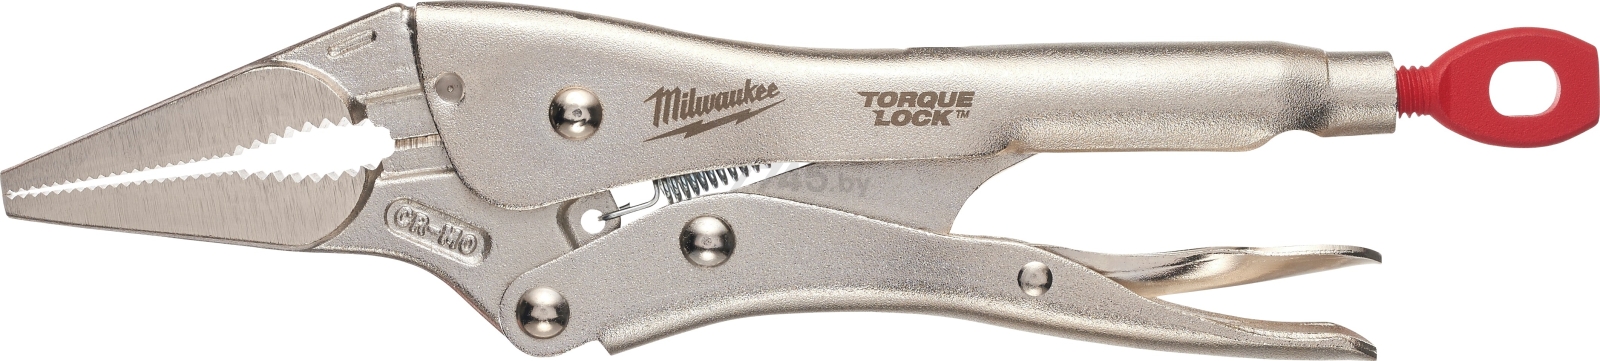 Зажим с фиксатором MILWAUKEE Torque Lock 230 мм удлиненные губки (4932471733)